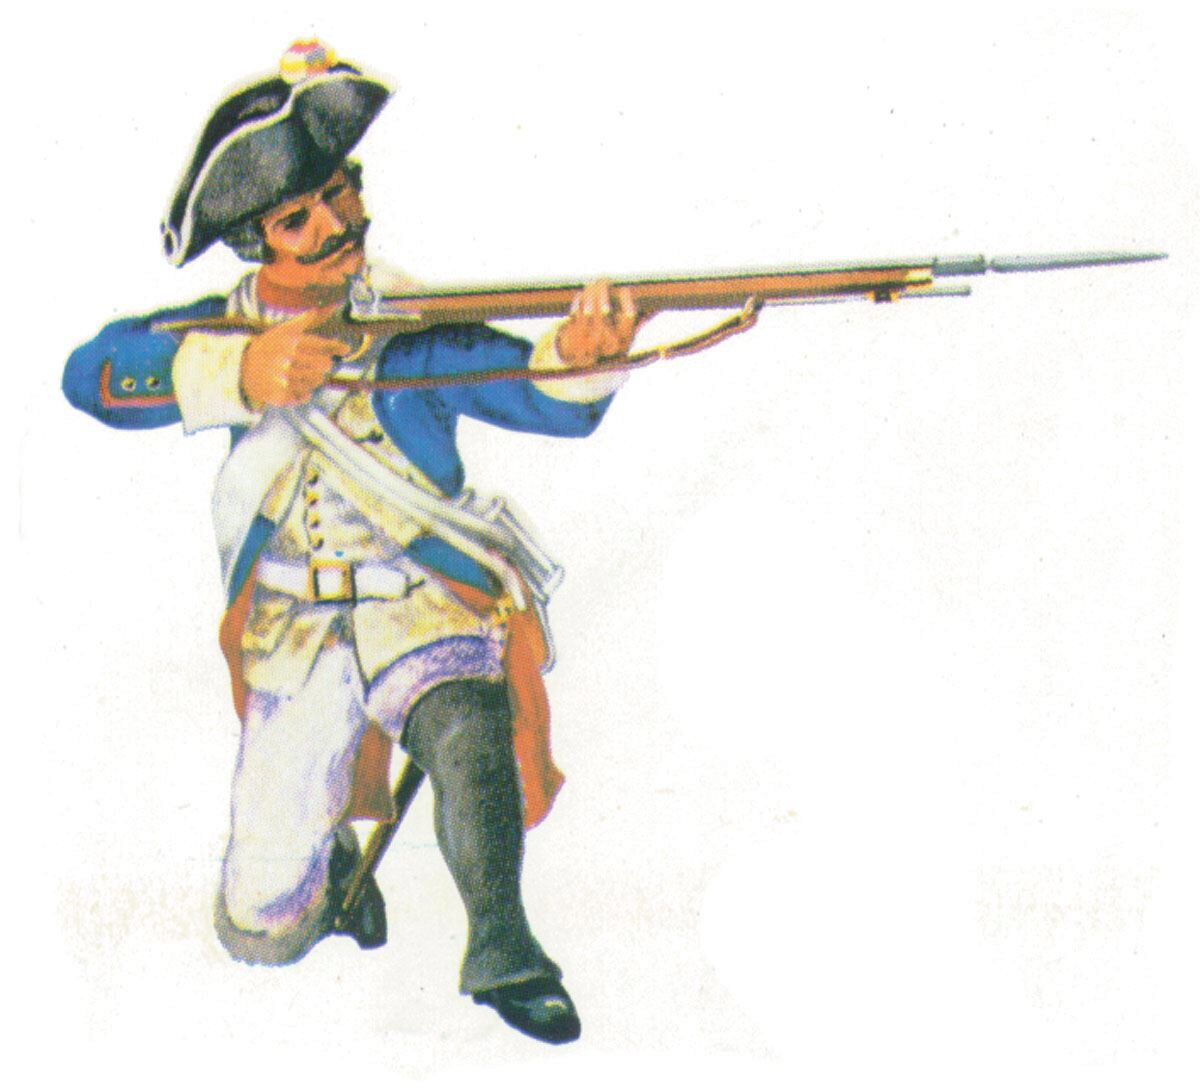 Prince August 405 Zinngiessform Prussian Musketier Preußen 18. Jh.